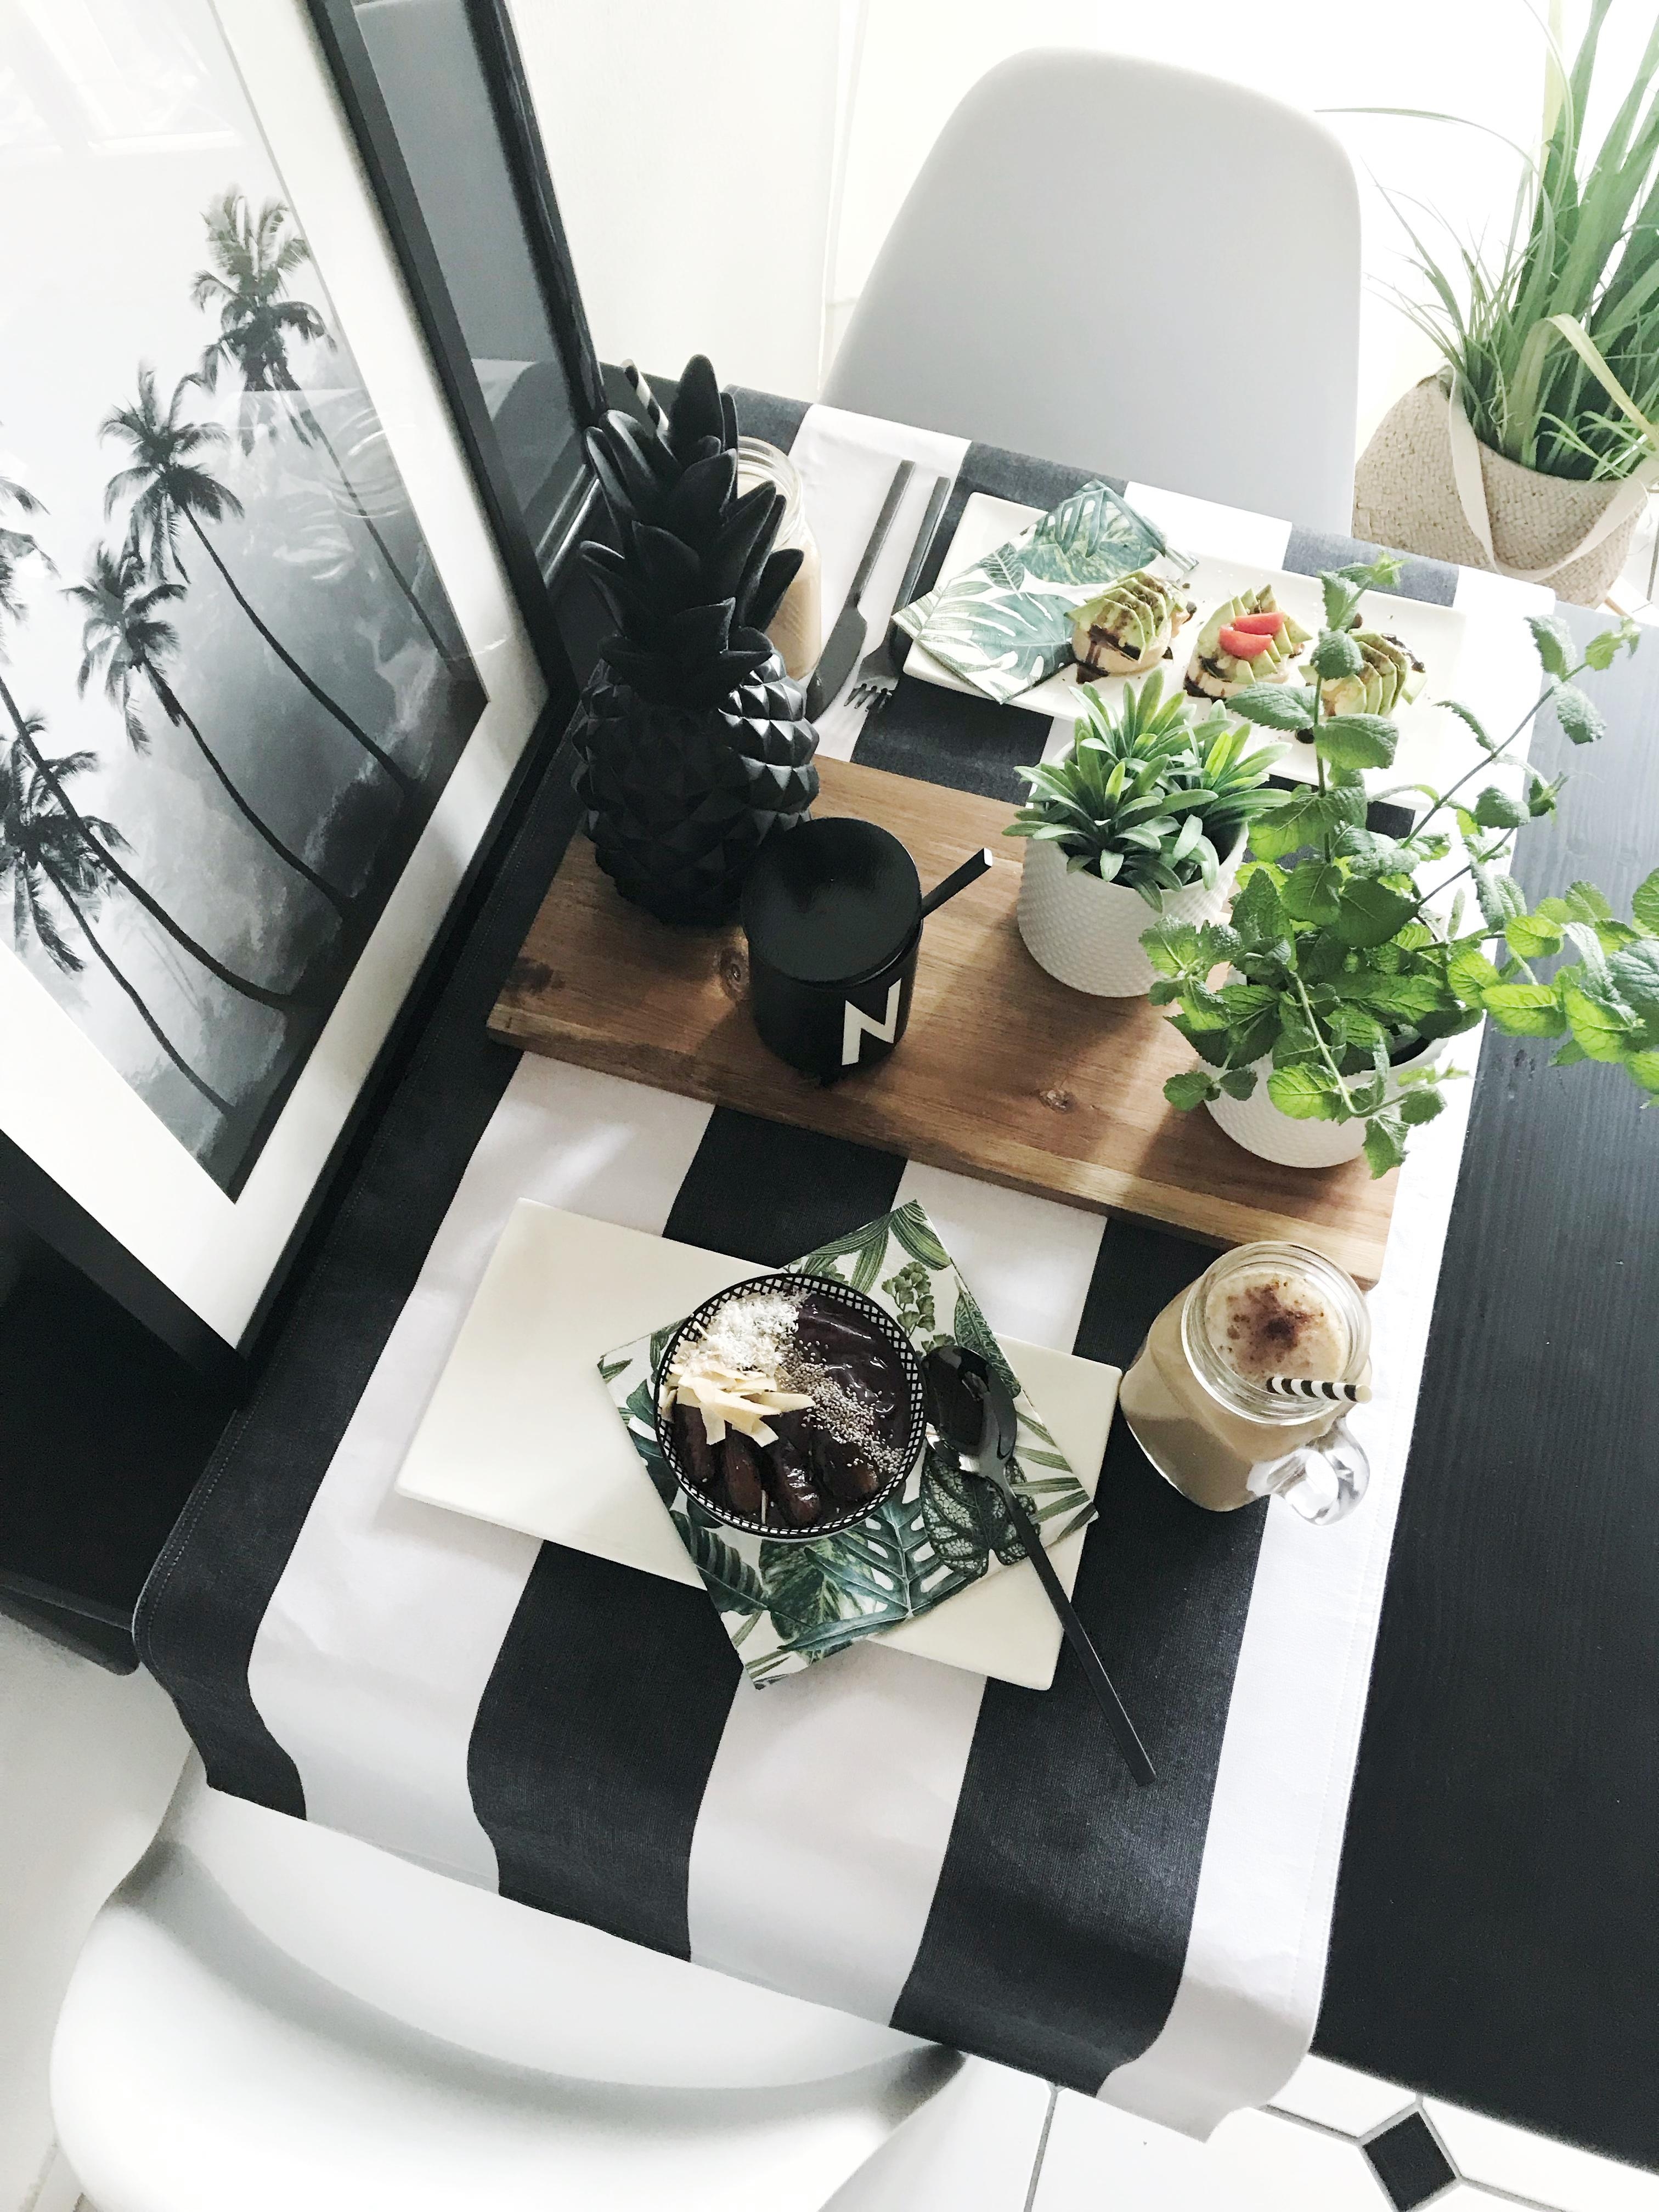 Erst mal ein schönes Sommerfrühstück! #küche #blackandwhite #interior #frühstück #essecke #schwarzweiss #palmen